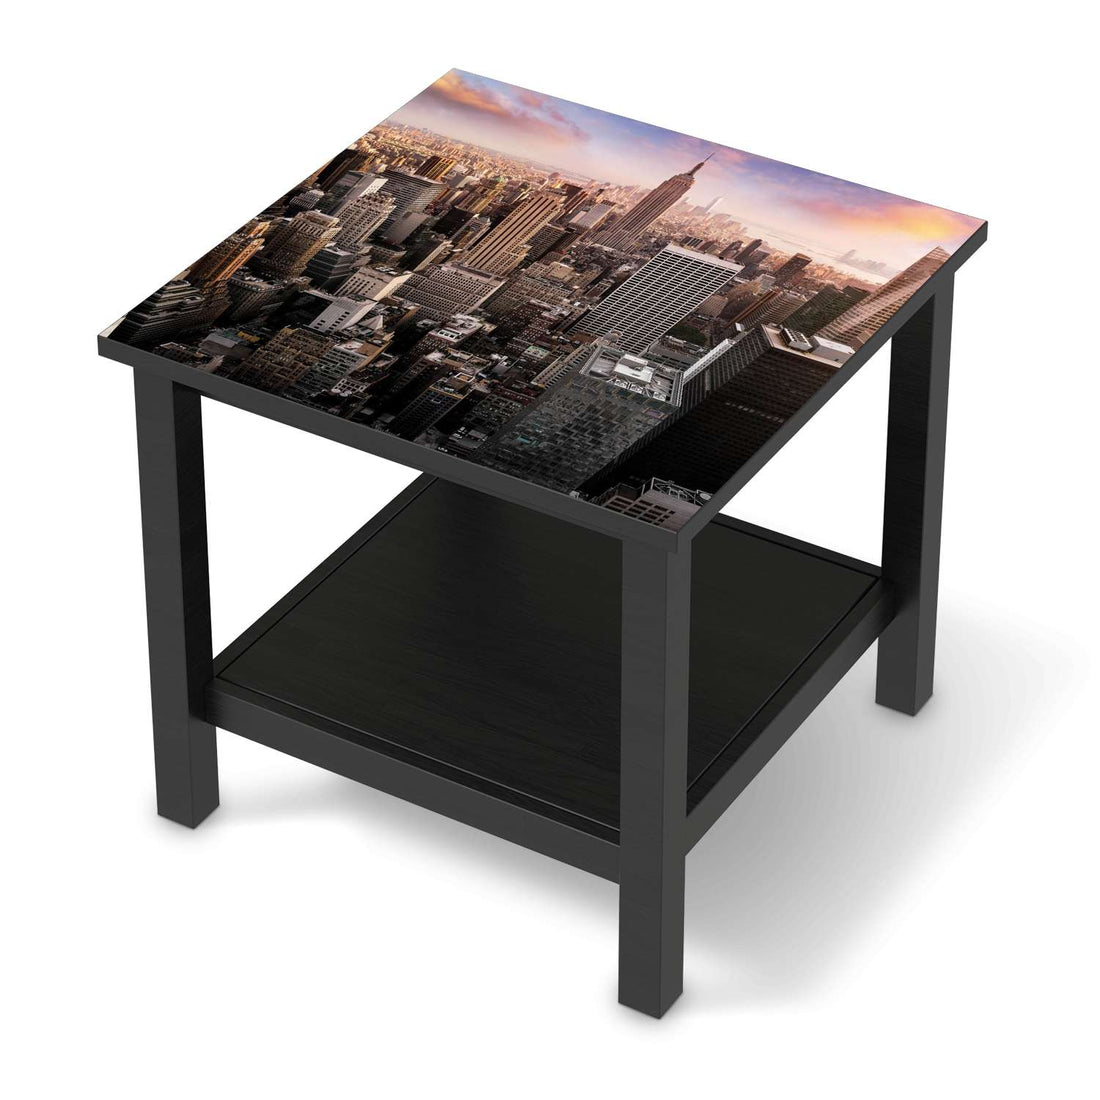 Möbel Klebefolie Big Apple - IKEA Hemnes Beistelltisch 55x55 cm - schwarz